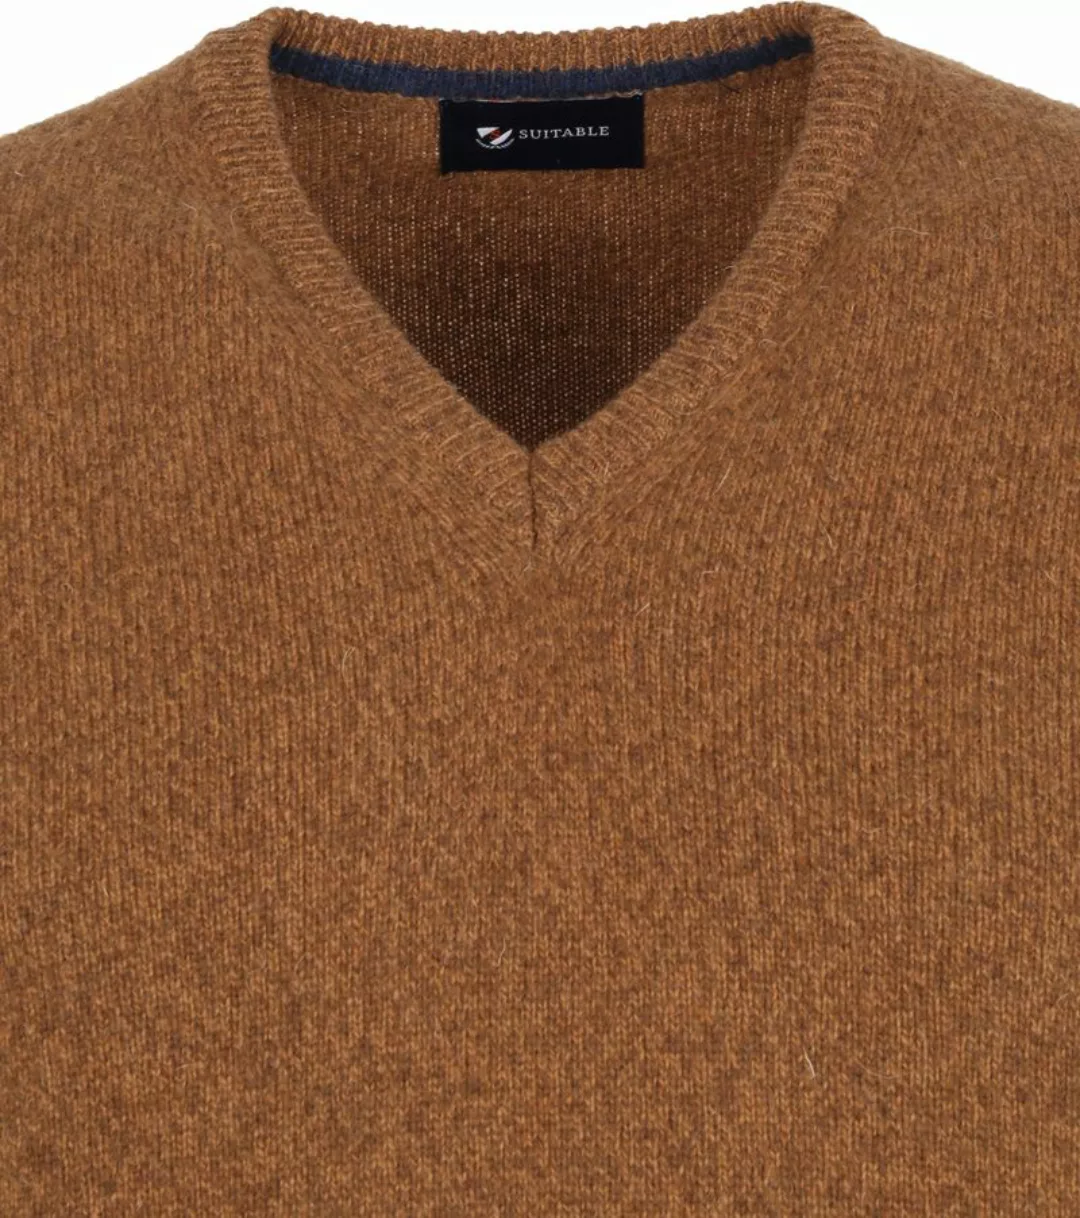 Suitable Lammwolle Pullover V-Ausschnitt Kamel - Größe M günstig online kaufen